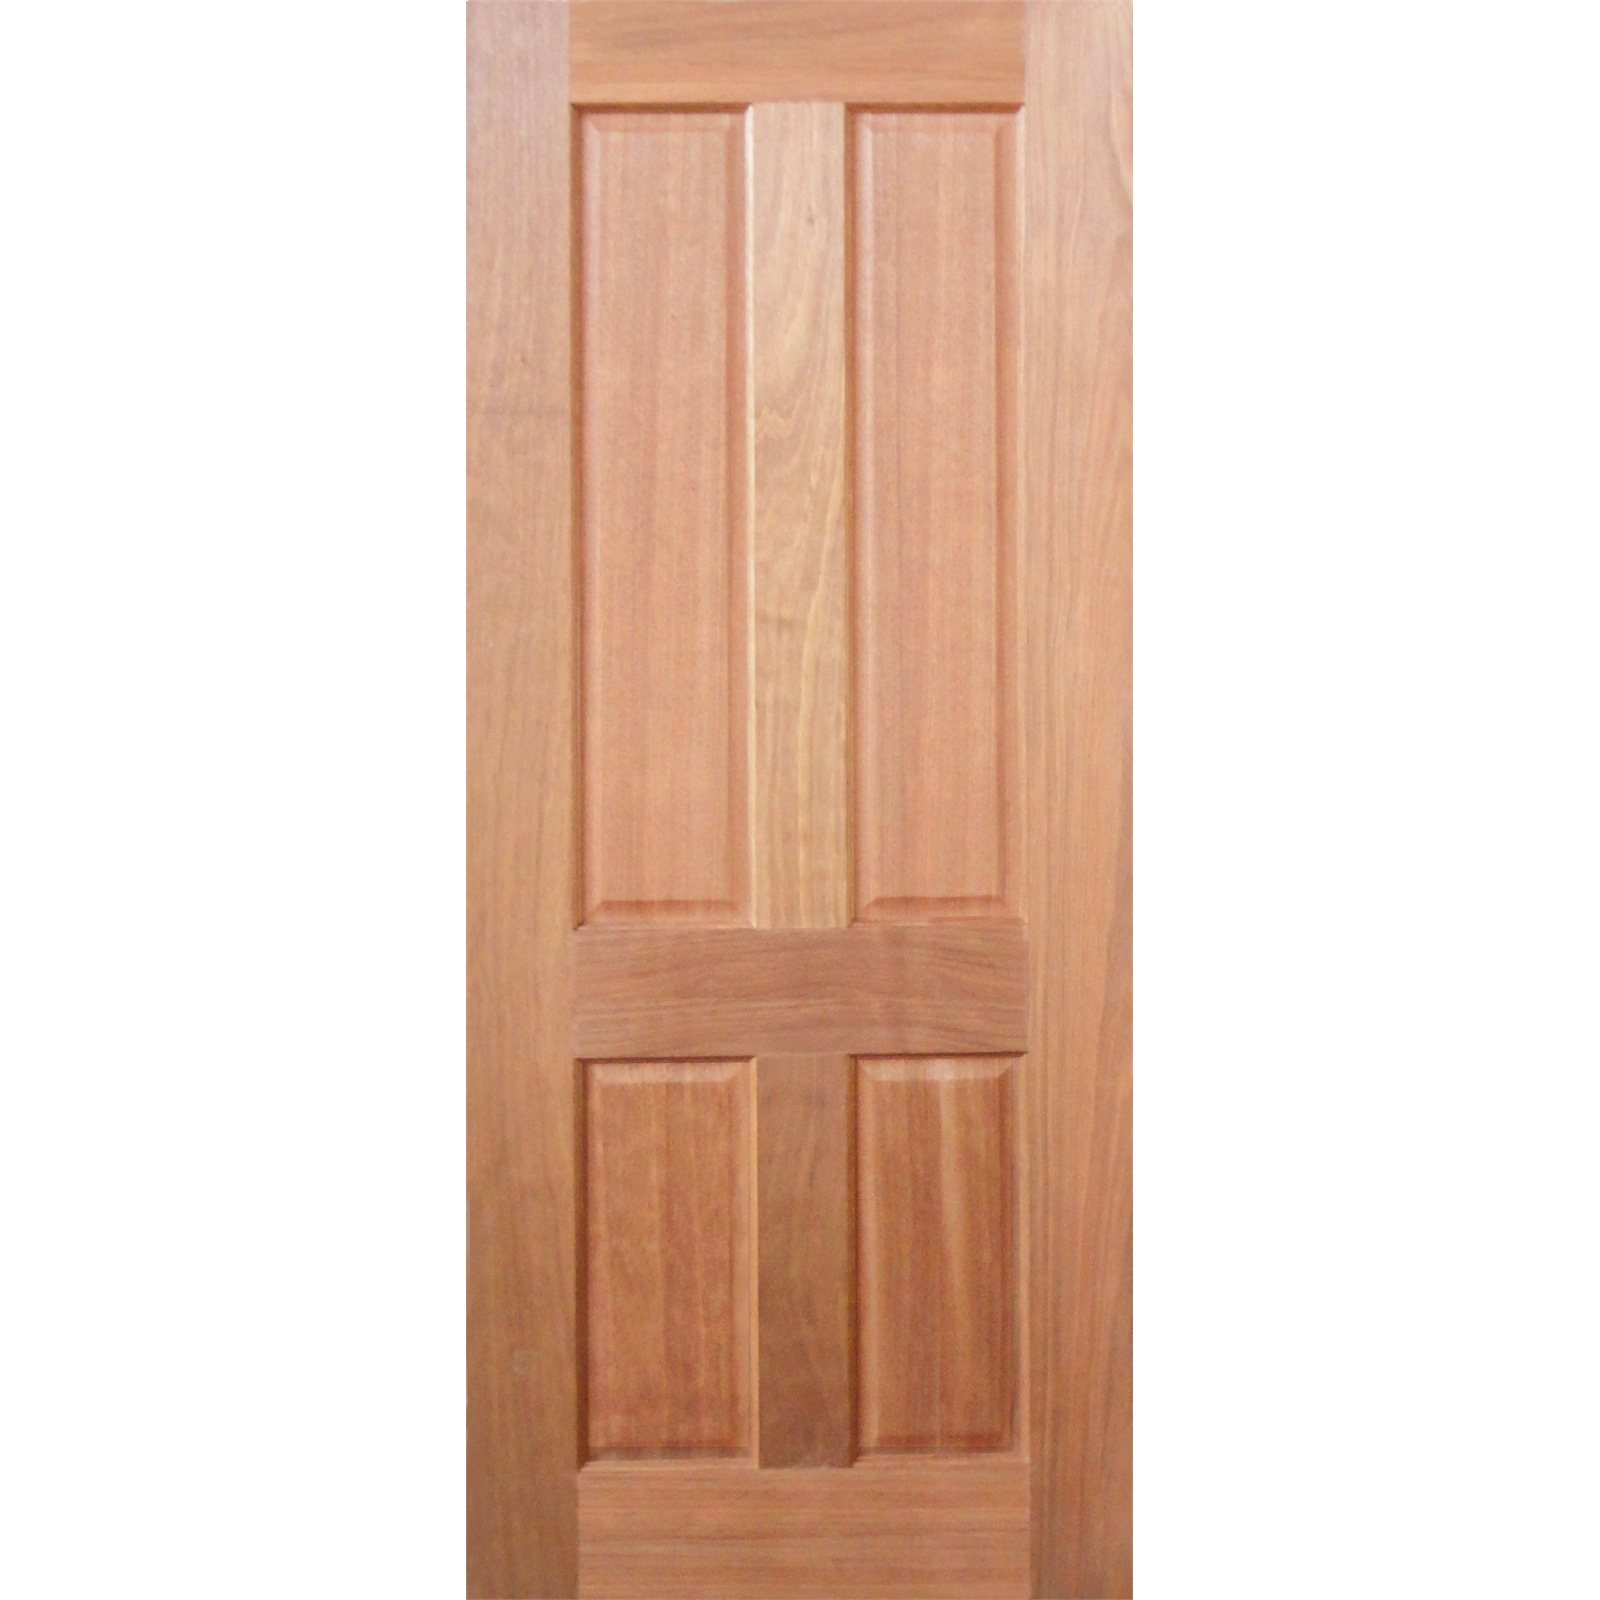 Woodcraft Doors 2040 x 820 x 35mm Lace Solid Internal Door